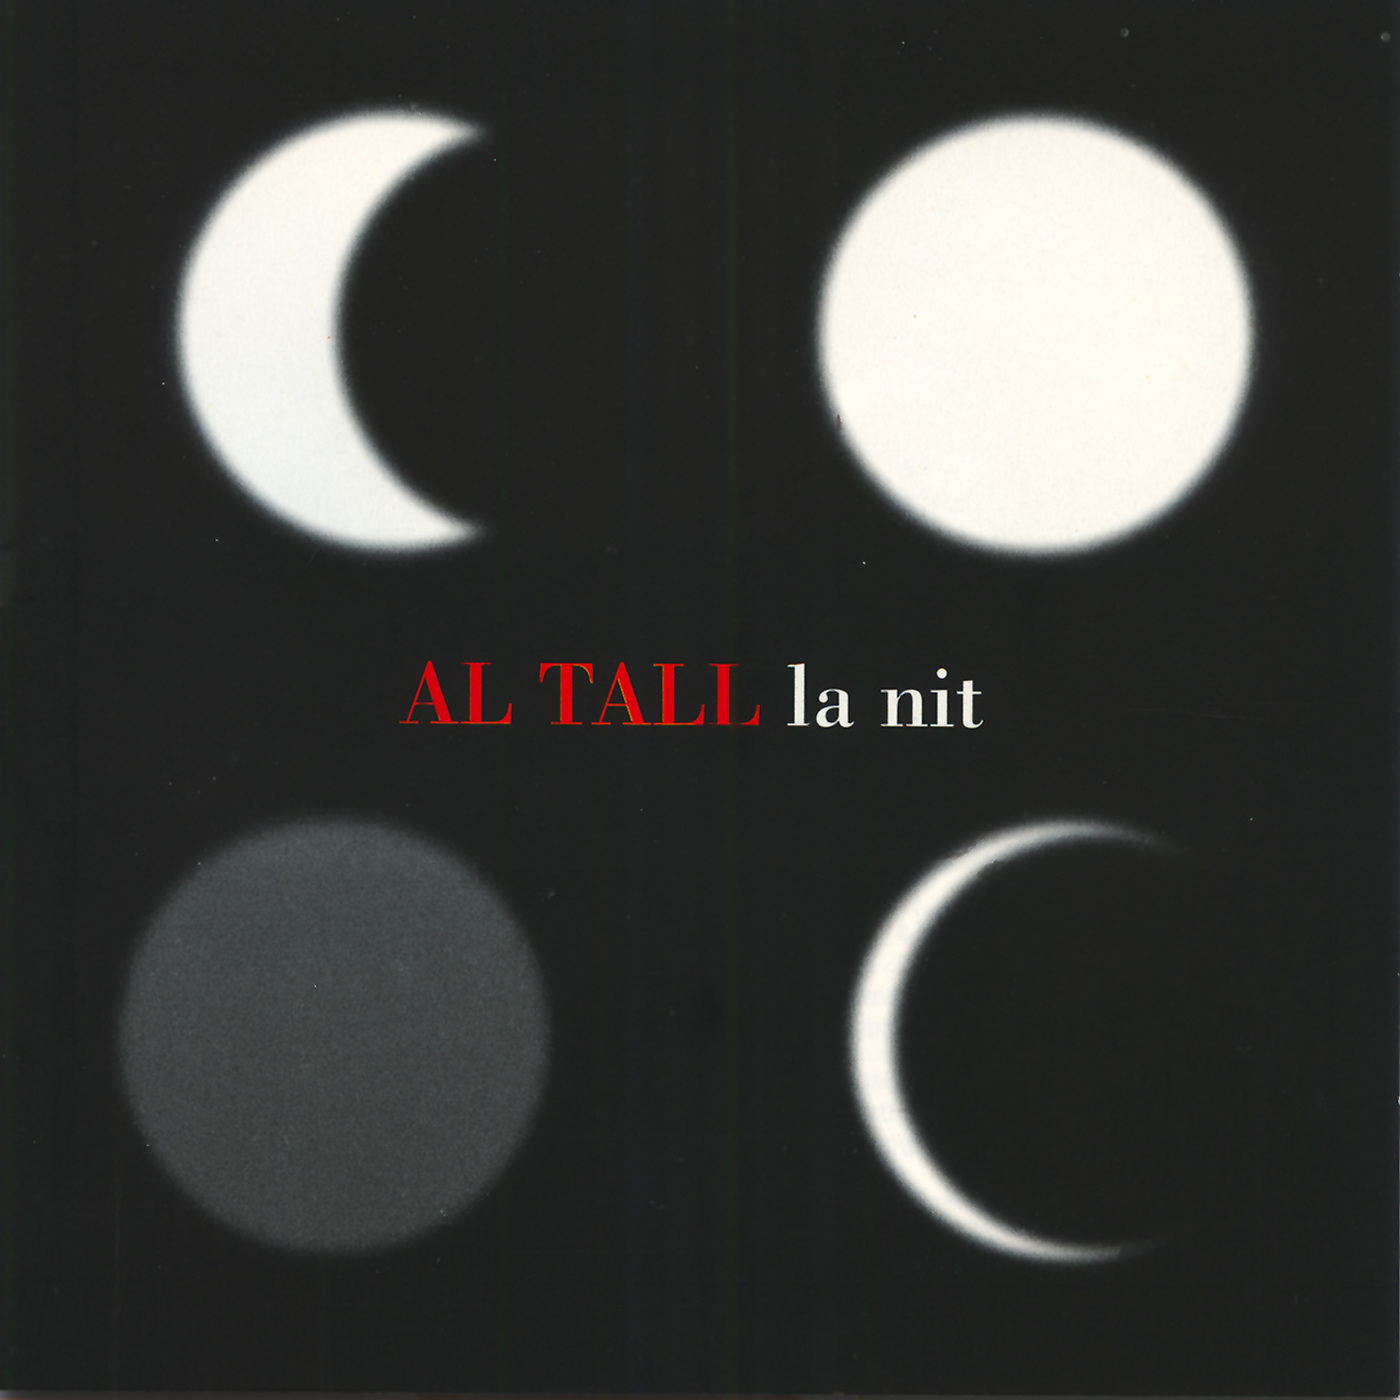 Al Tall - La nit | musica en valencià